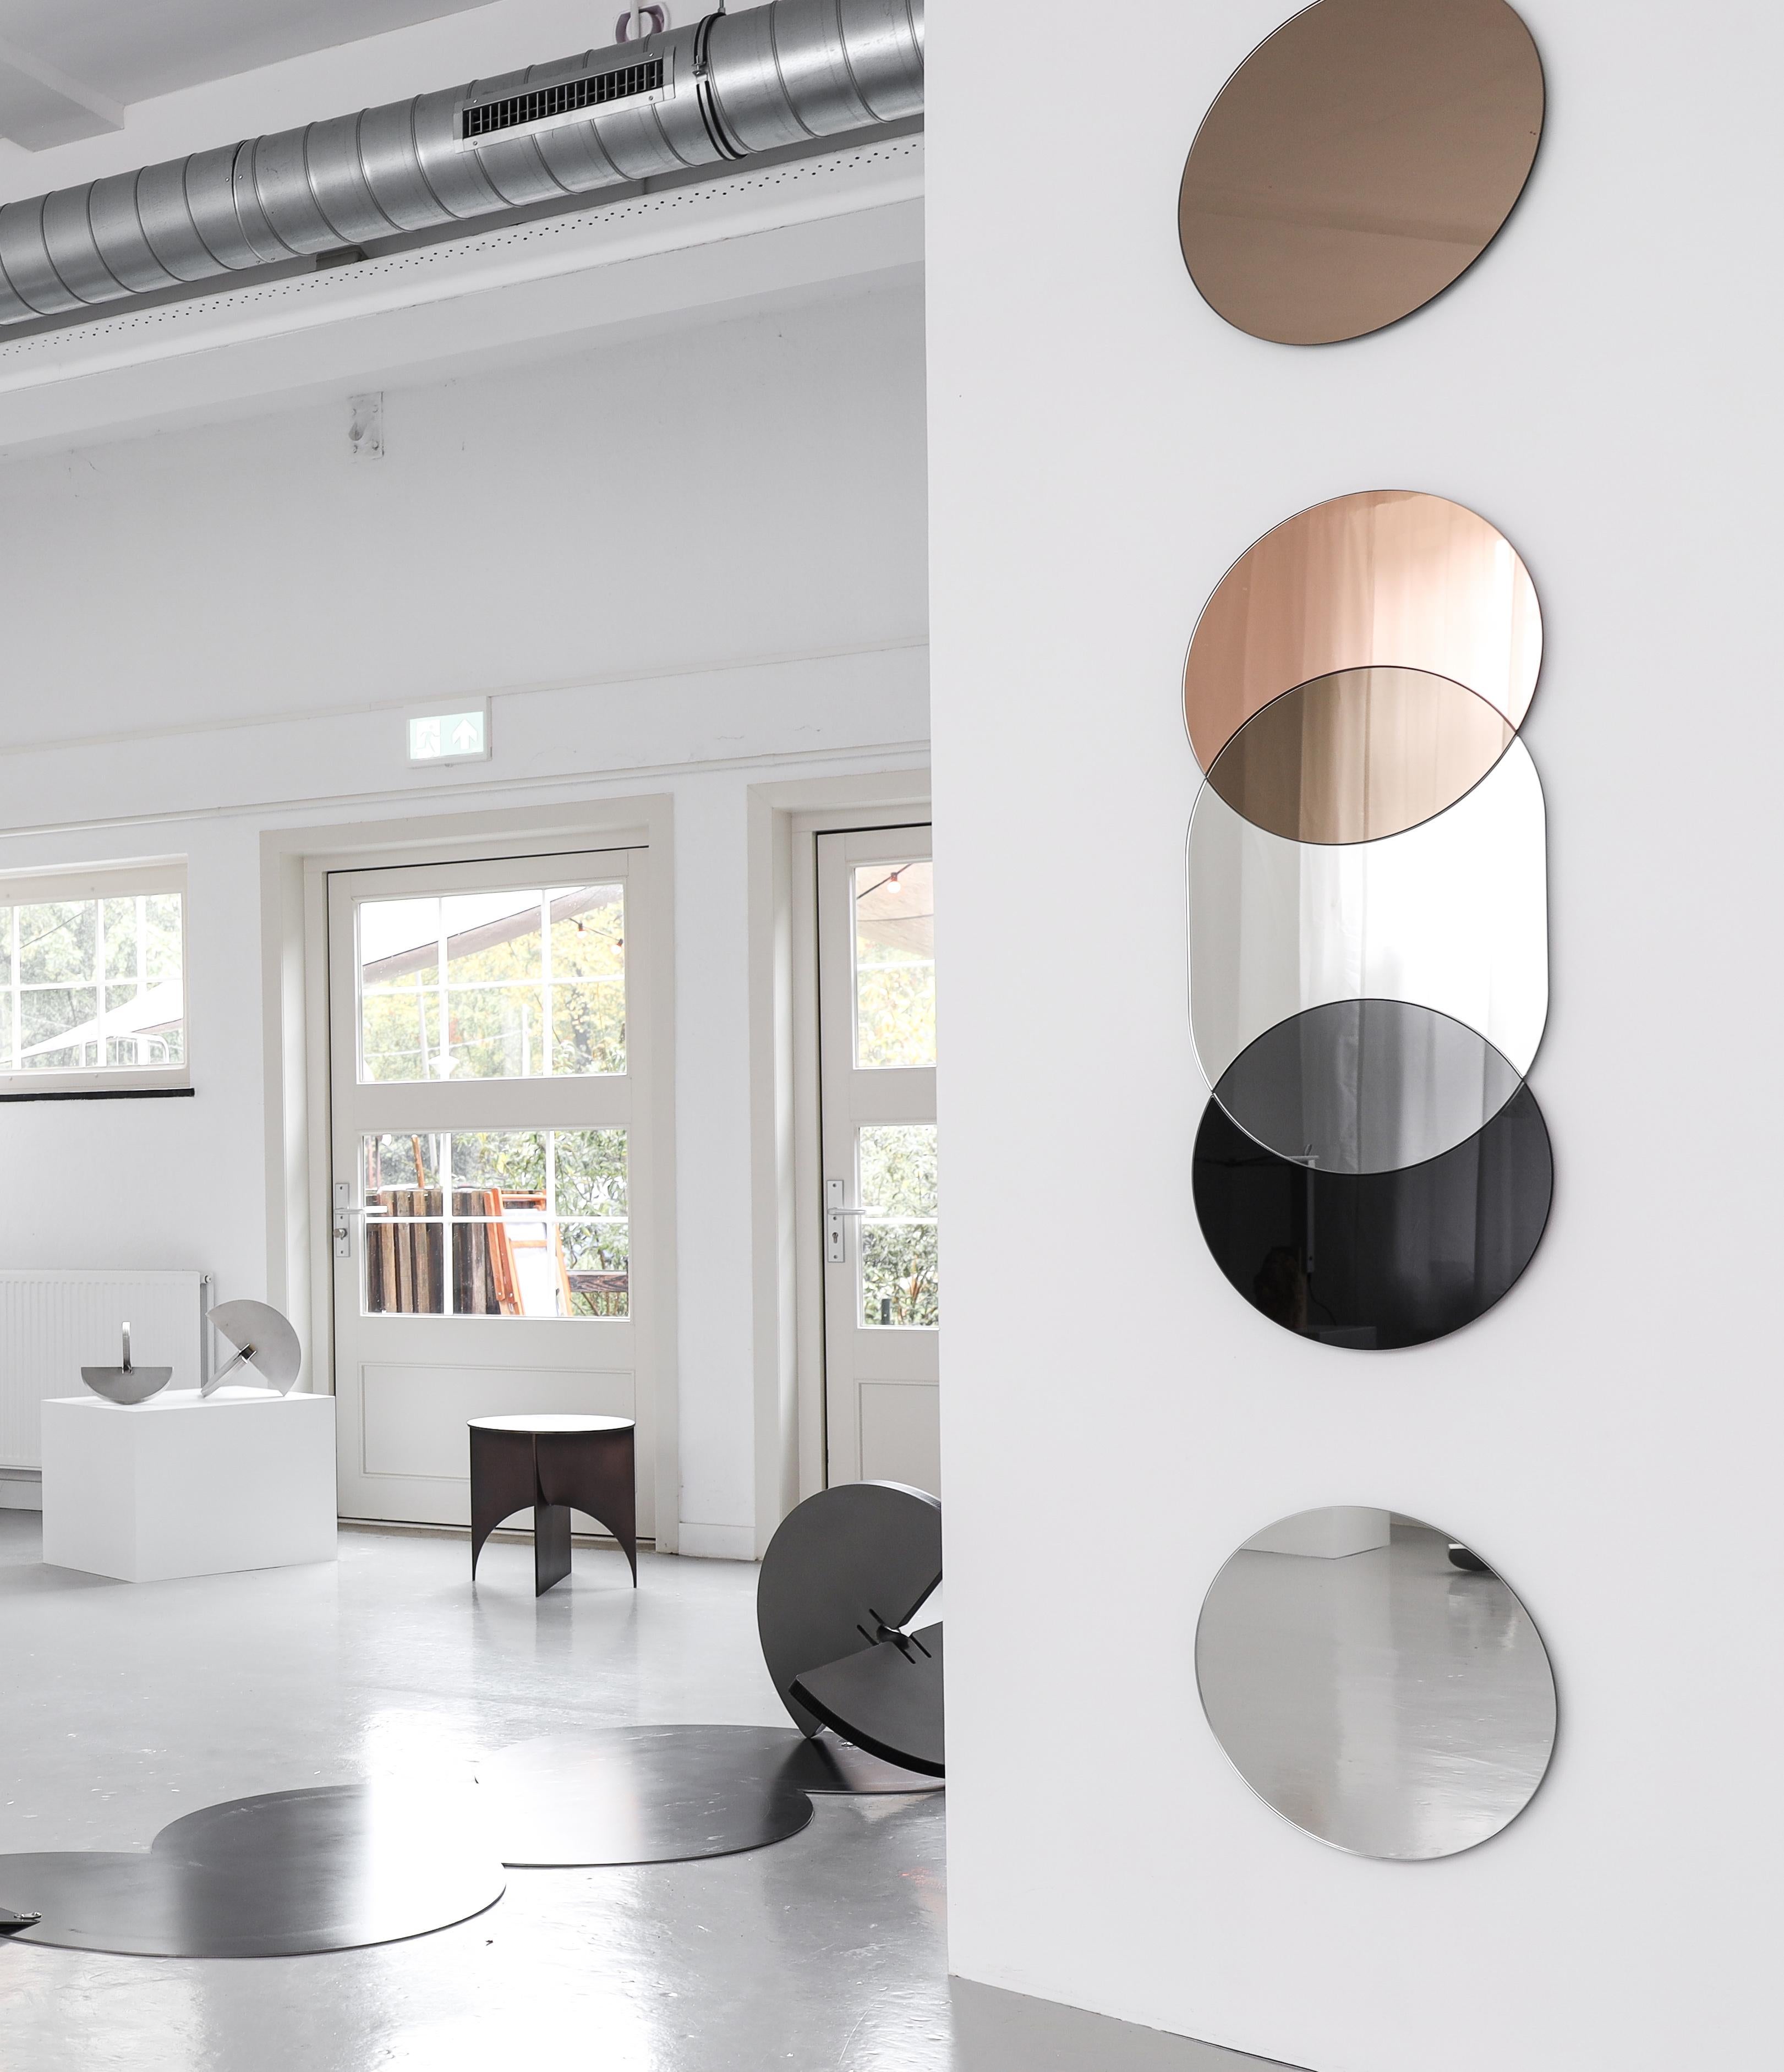 Die Layered Silhouettes Spiegel sind spielerische, reflektierende Kompositionen, die funktionale Spiegel mit geometrischen, dekorativen Wandobjekten verbinden. Die Spiegel der Layered Silhouettes erzeugen die Illusion von Raum und Transparenz, indem